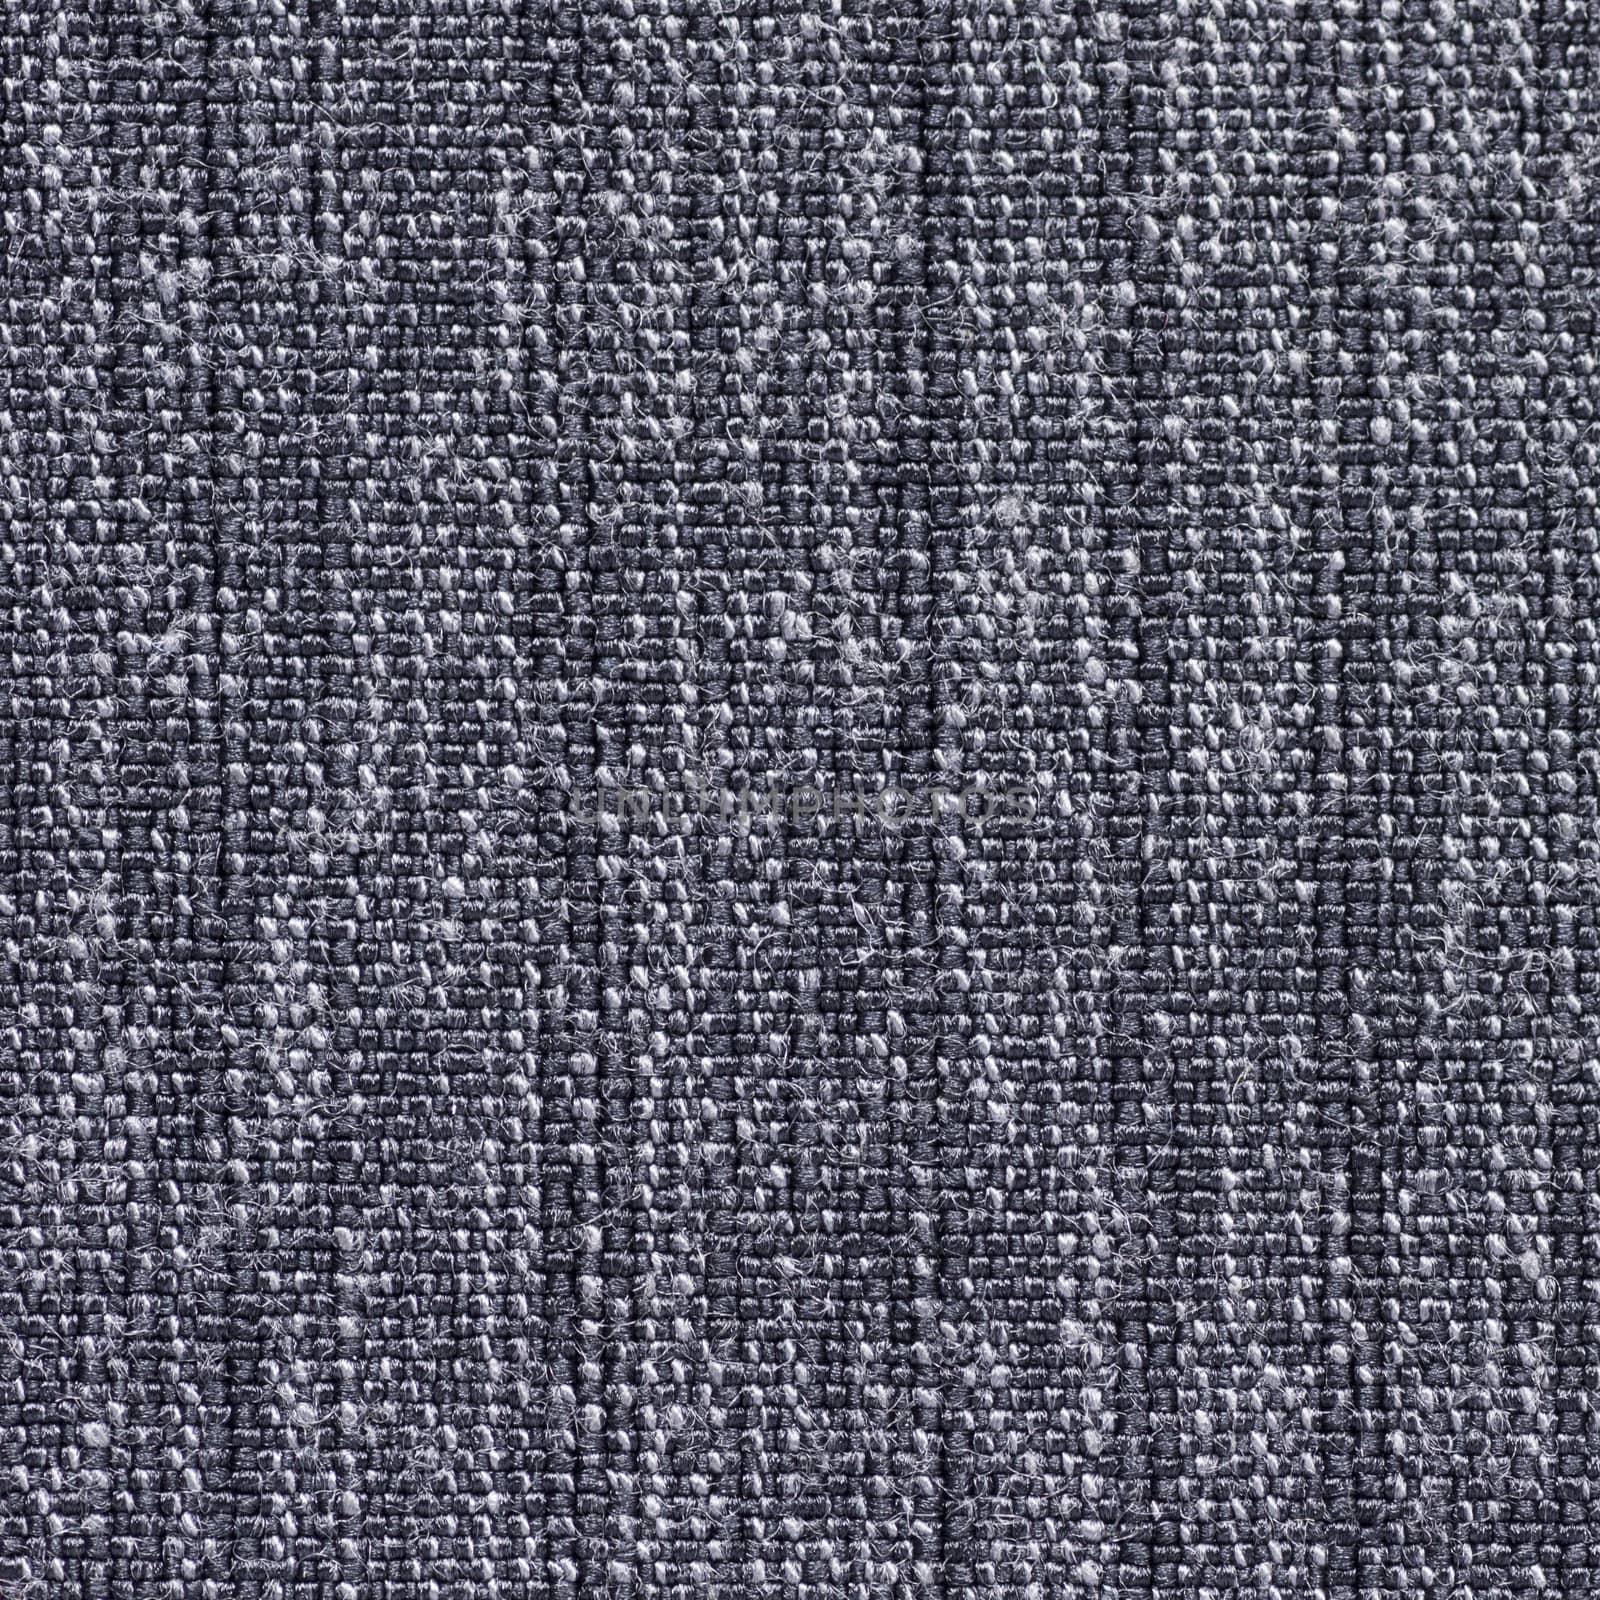 Close up shot of seamless fabric texture